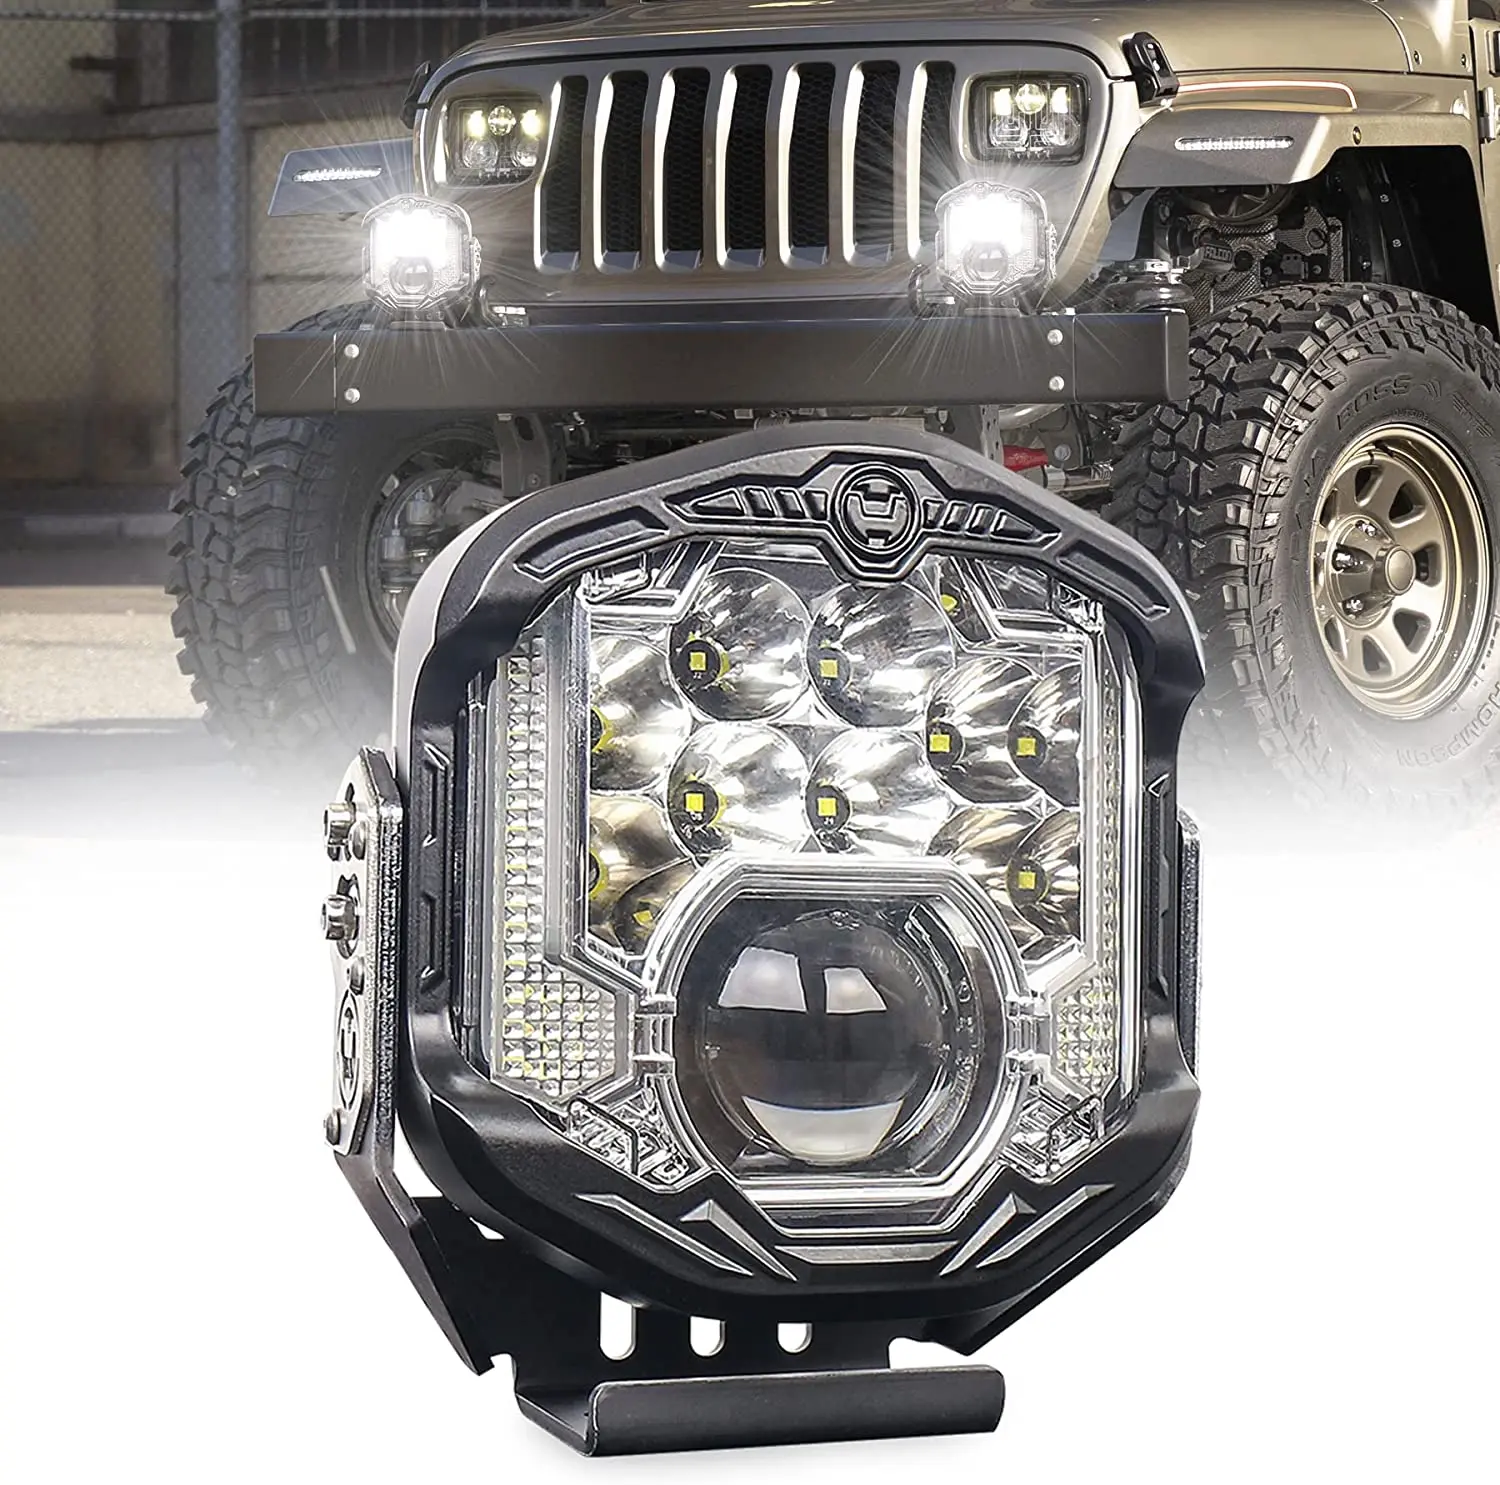 

Off Road LED Driving Lamp with Laser Light White DRL 7inch Spotlight for Truck Pickup 4x4 UTV ATV SUV Pack of 1